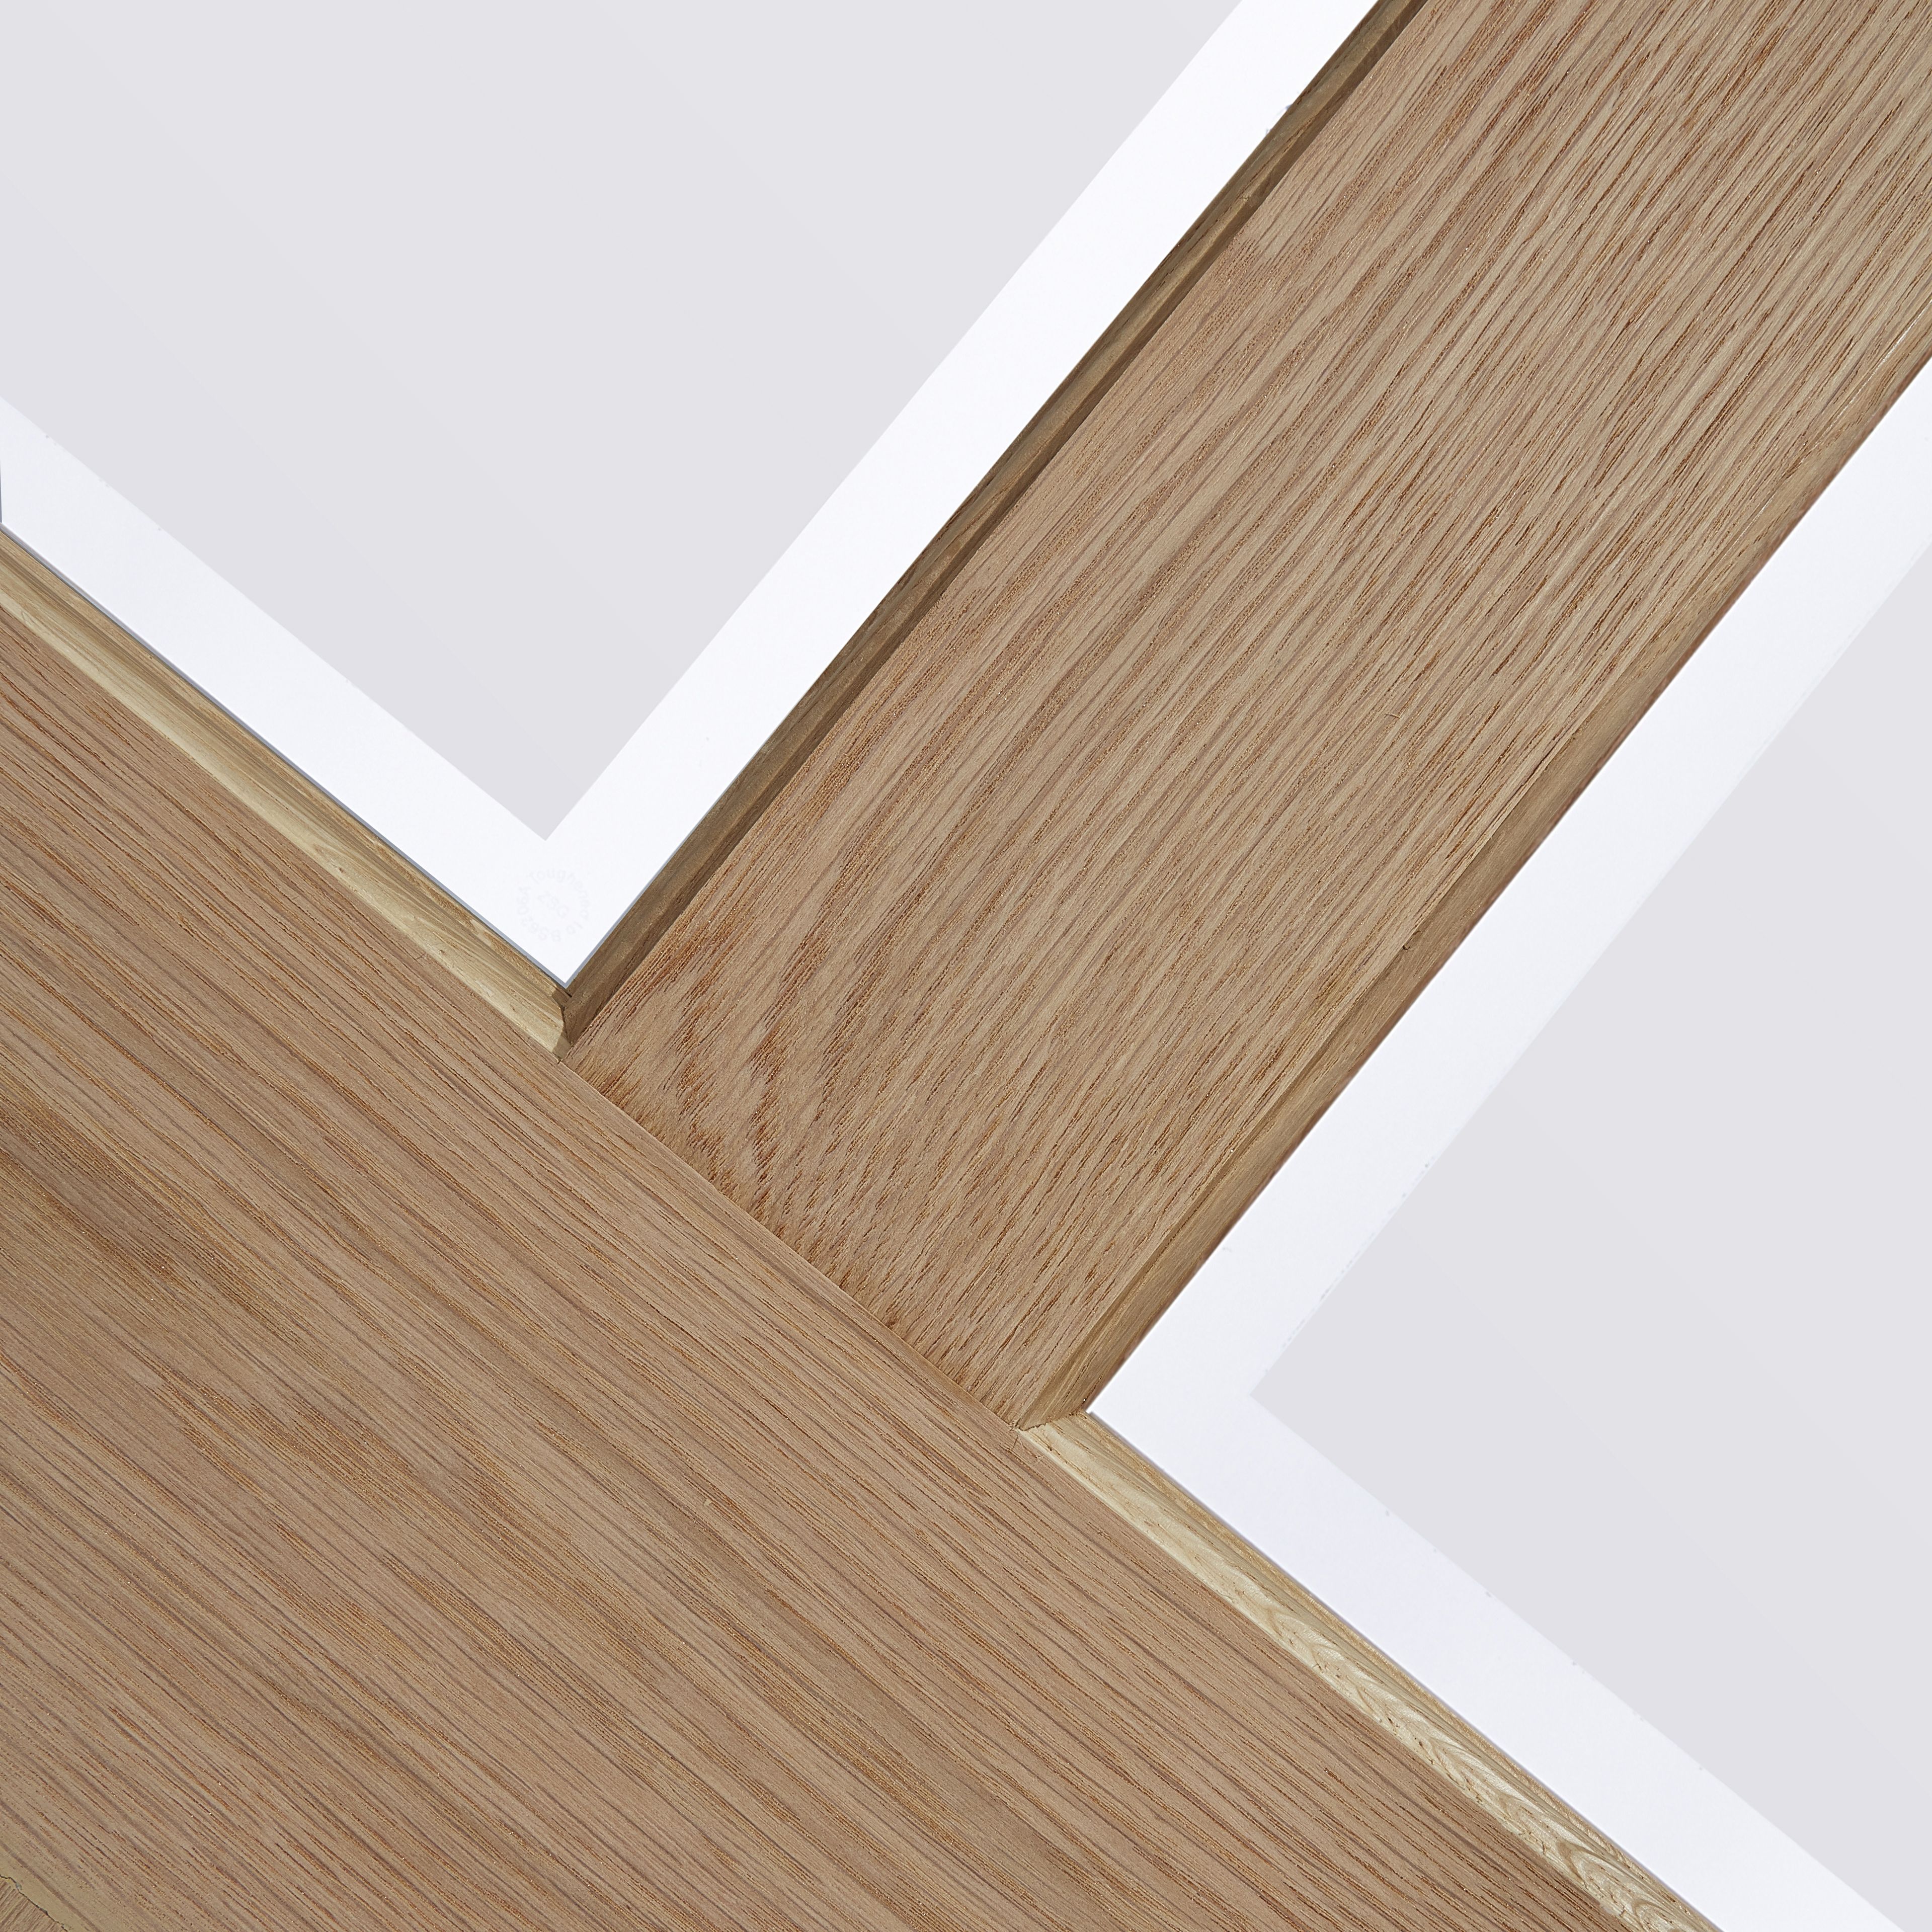 Geom 4 panel Frosted Glazed Oak veneer Internal Door, (H)2040mm (W)826mm (T)40mm